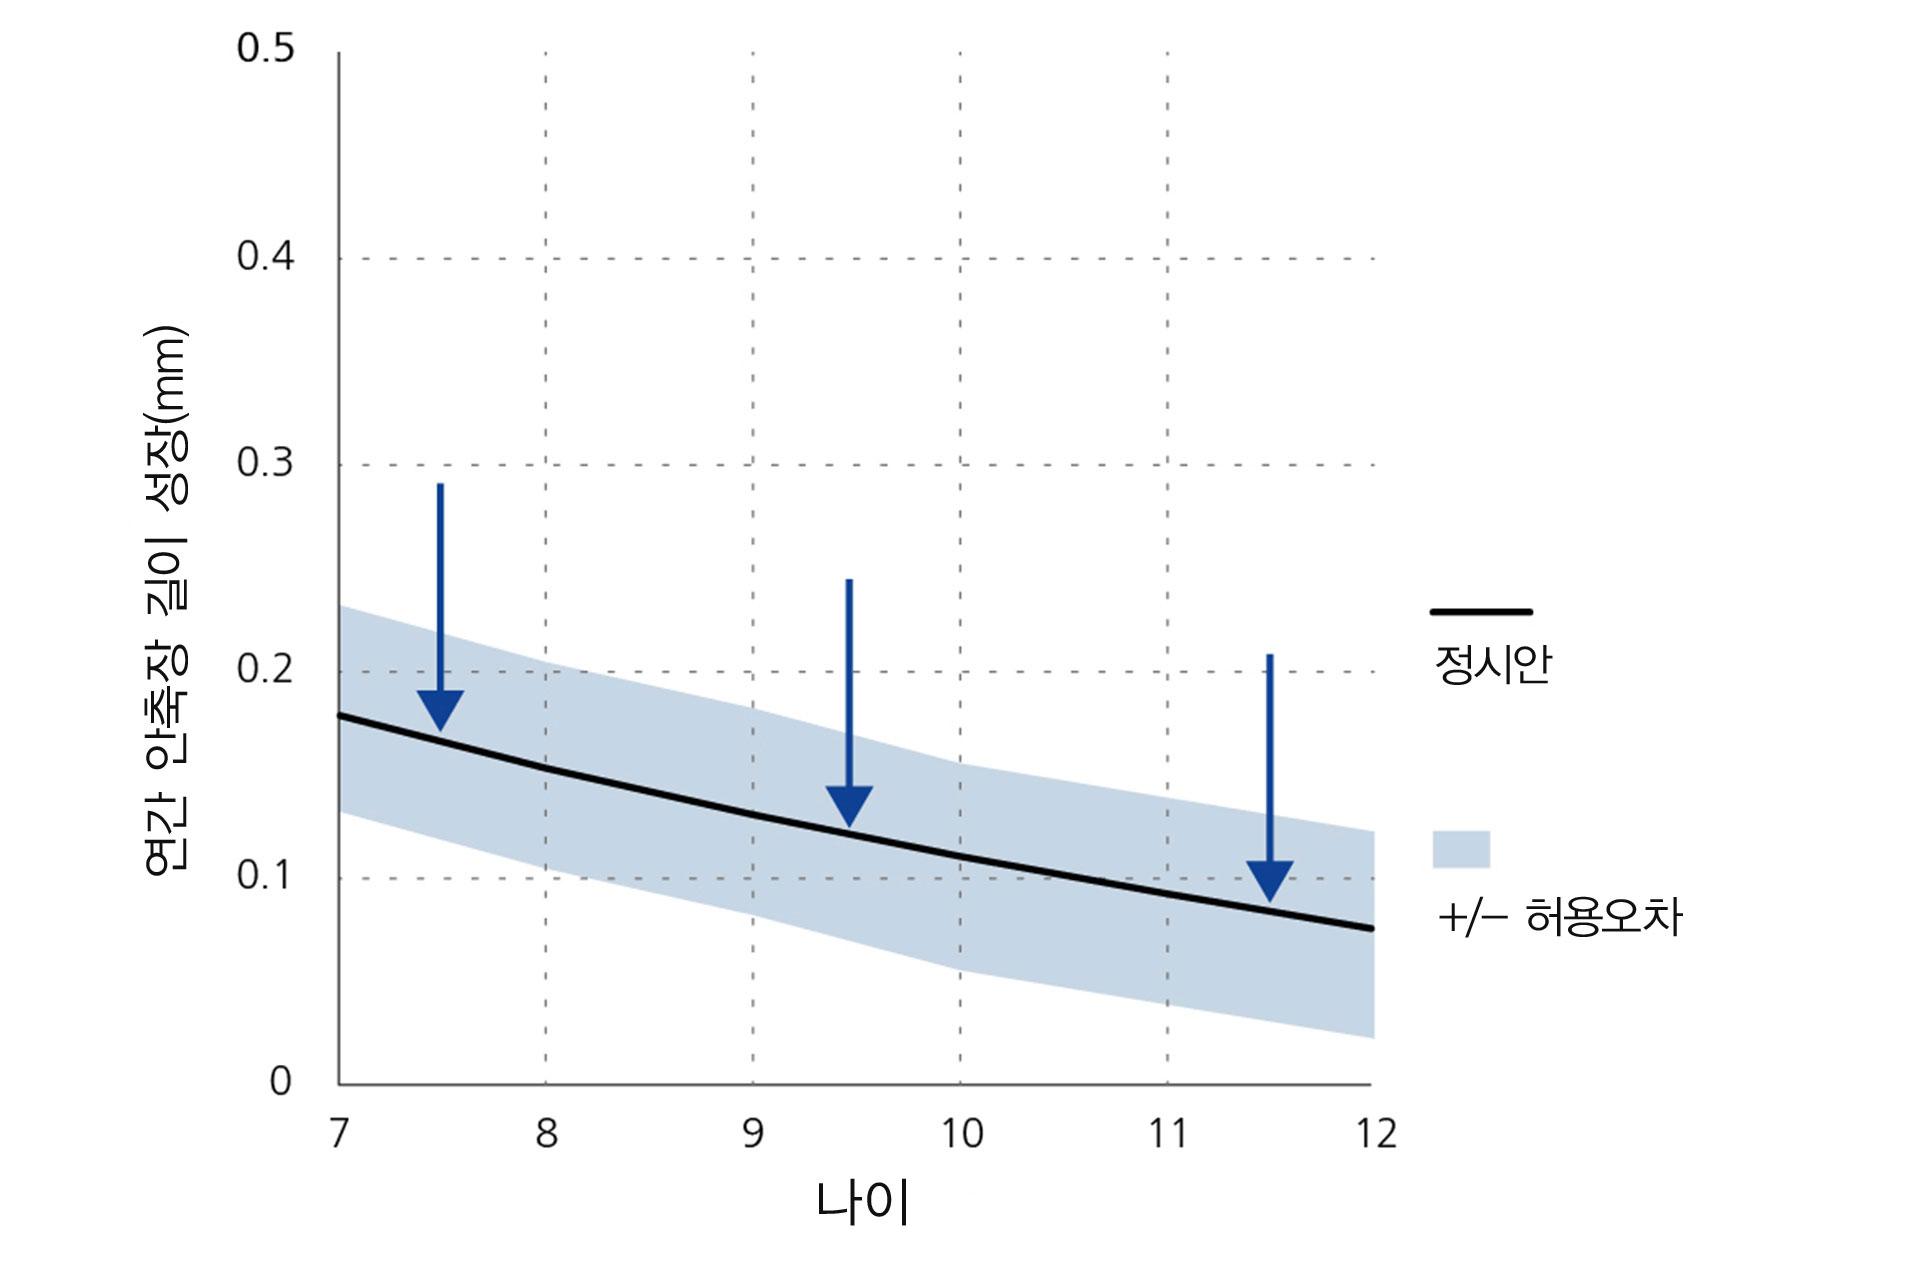 안축 길이 진행의 연간 감소를 보여주는 선 그래프 (연령별 기준선).